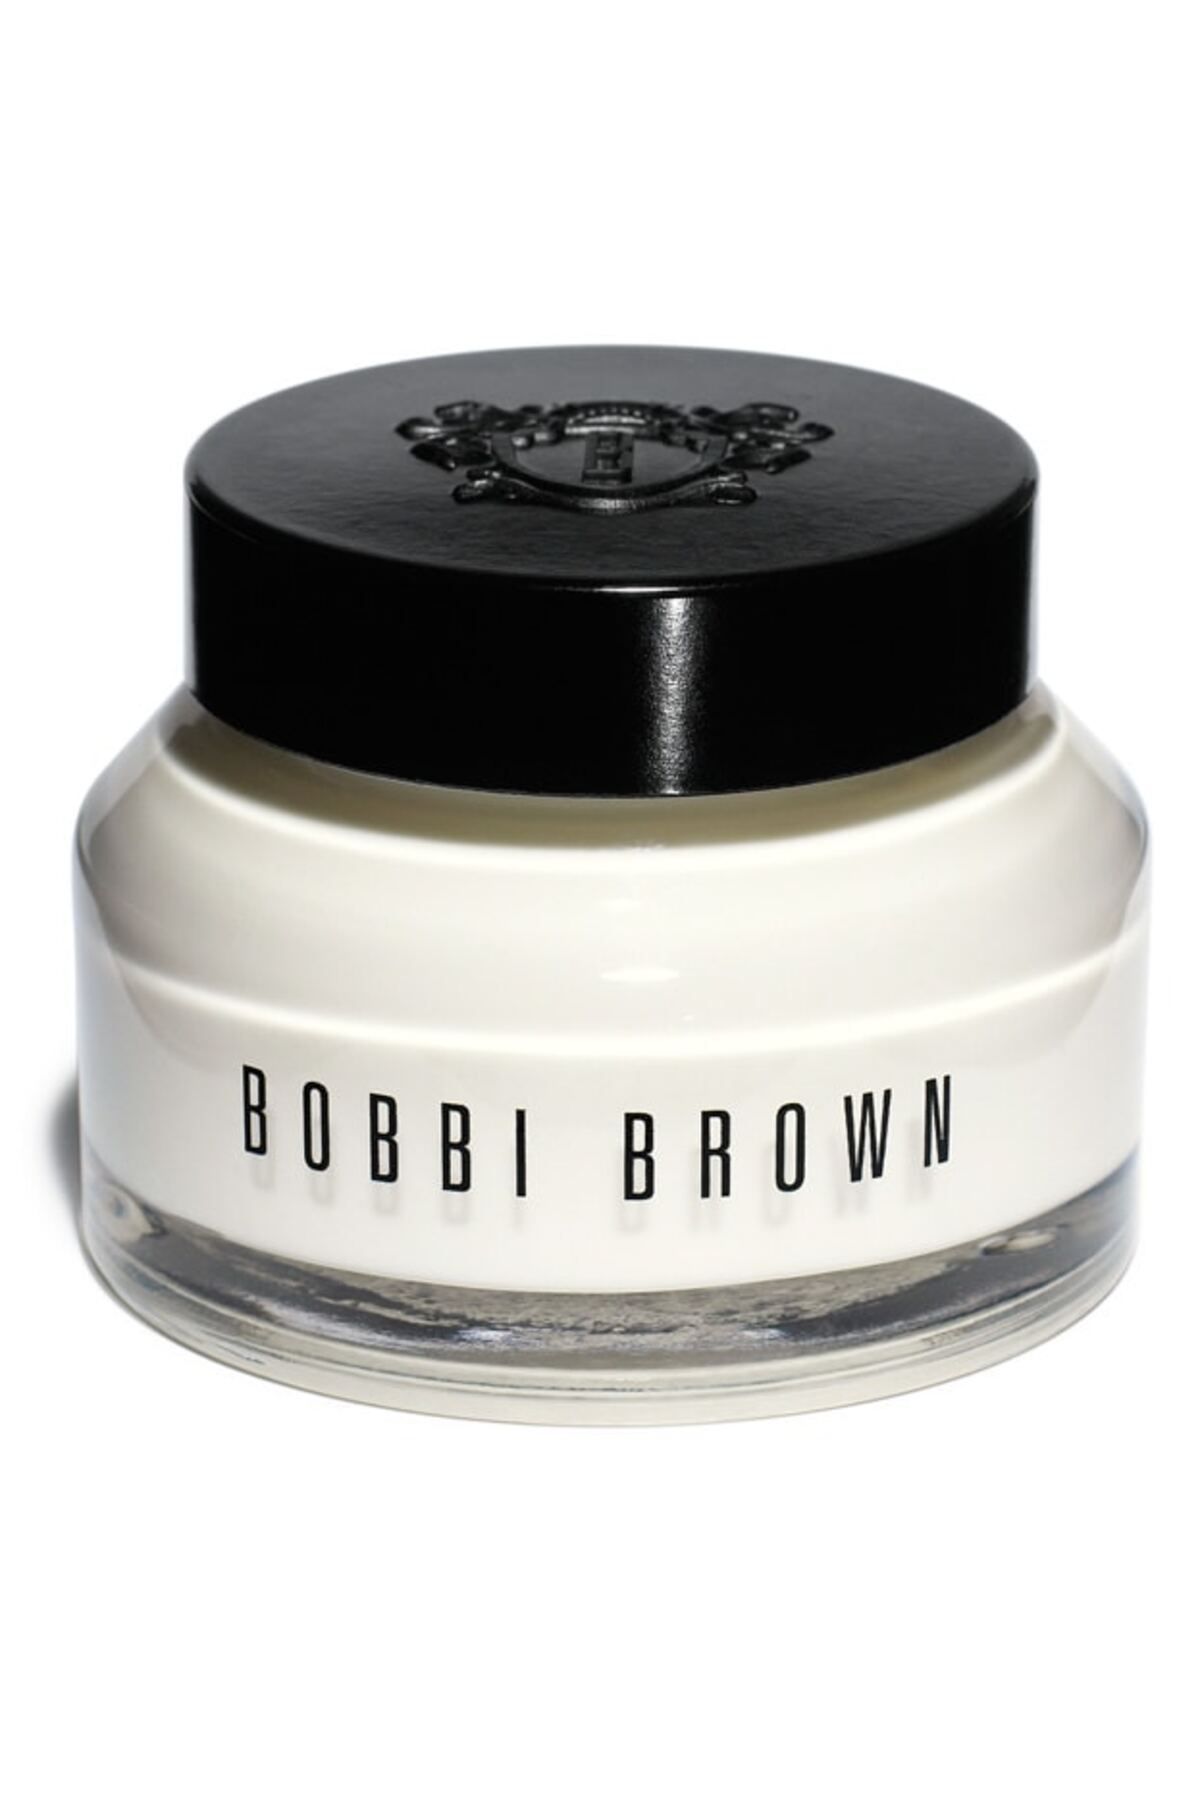 Bobbi Brown Hydrating Face Cream / Nemlendirici Yüz Kremi 50 ml 716170079424